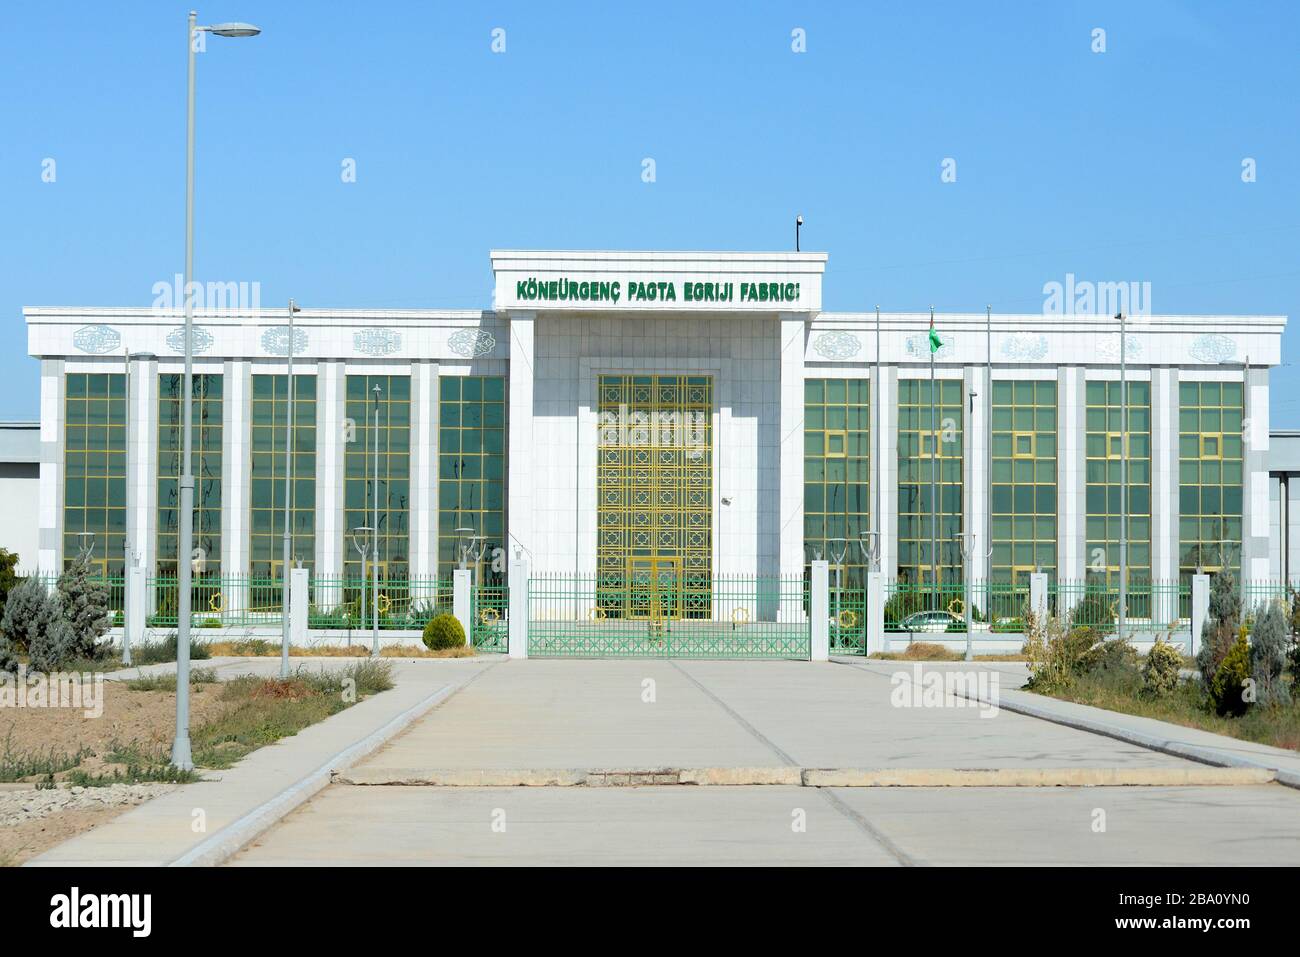 Fassade der Koneurgench Cotton Spinning Factory in Dashoguz, Turkmenistan. Mit weißem Marmor gebaut und mit Gold verziert. Turkmenische Textilindustrie. Stockfoto